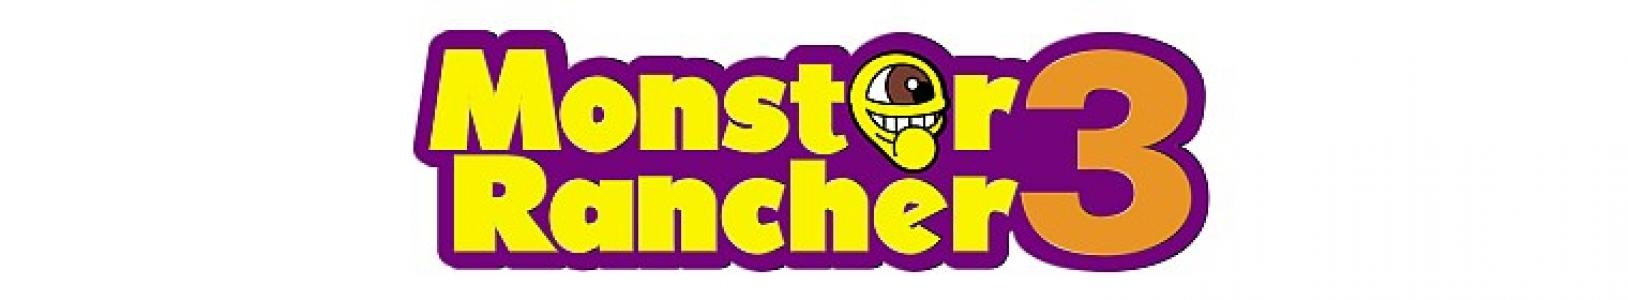 Monster Rancher 3 banner